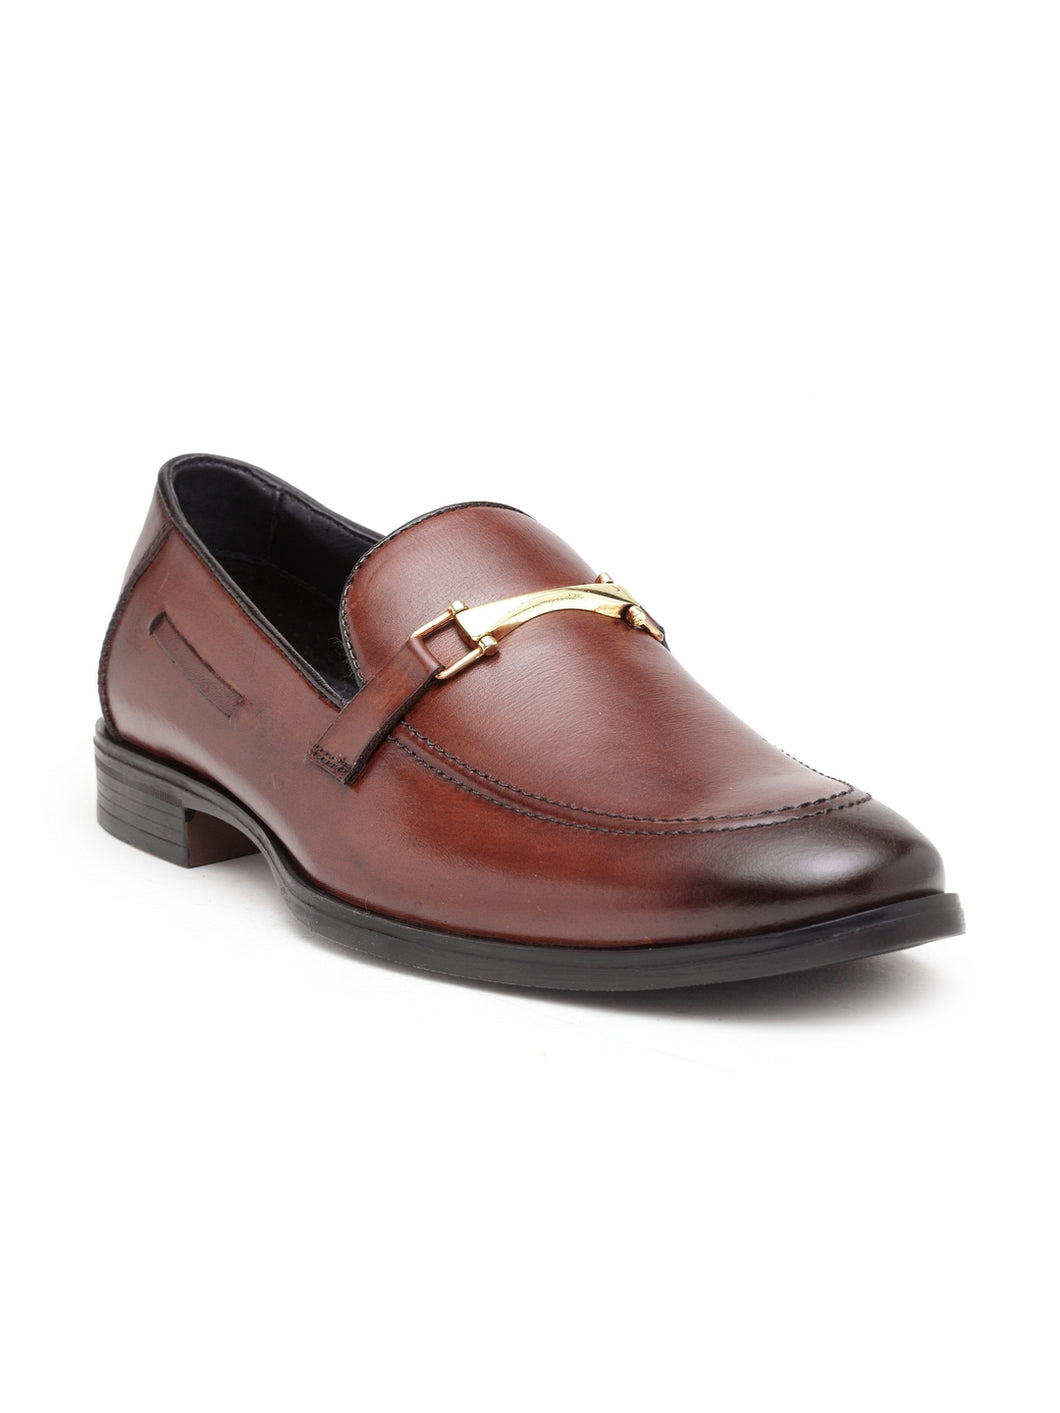 Teakwood Genuine leather Men Brown Formal Slip-On Shoes